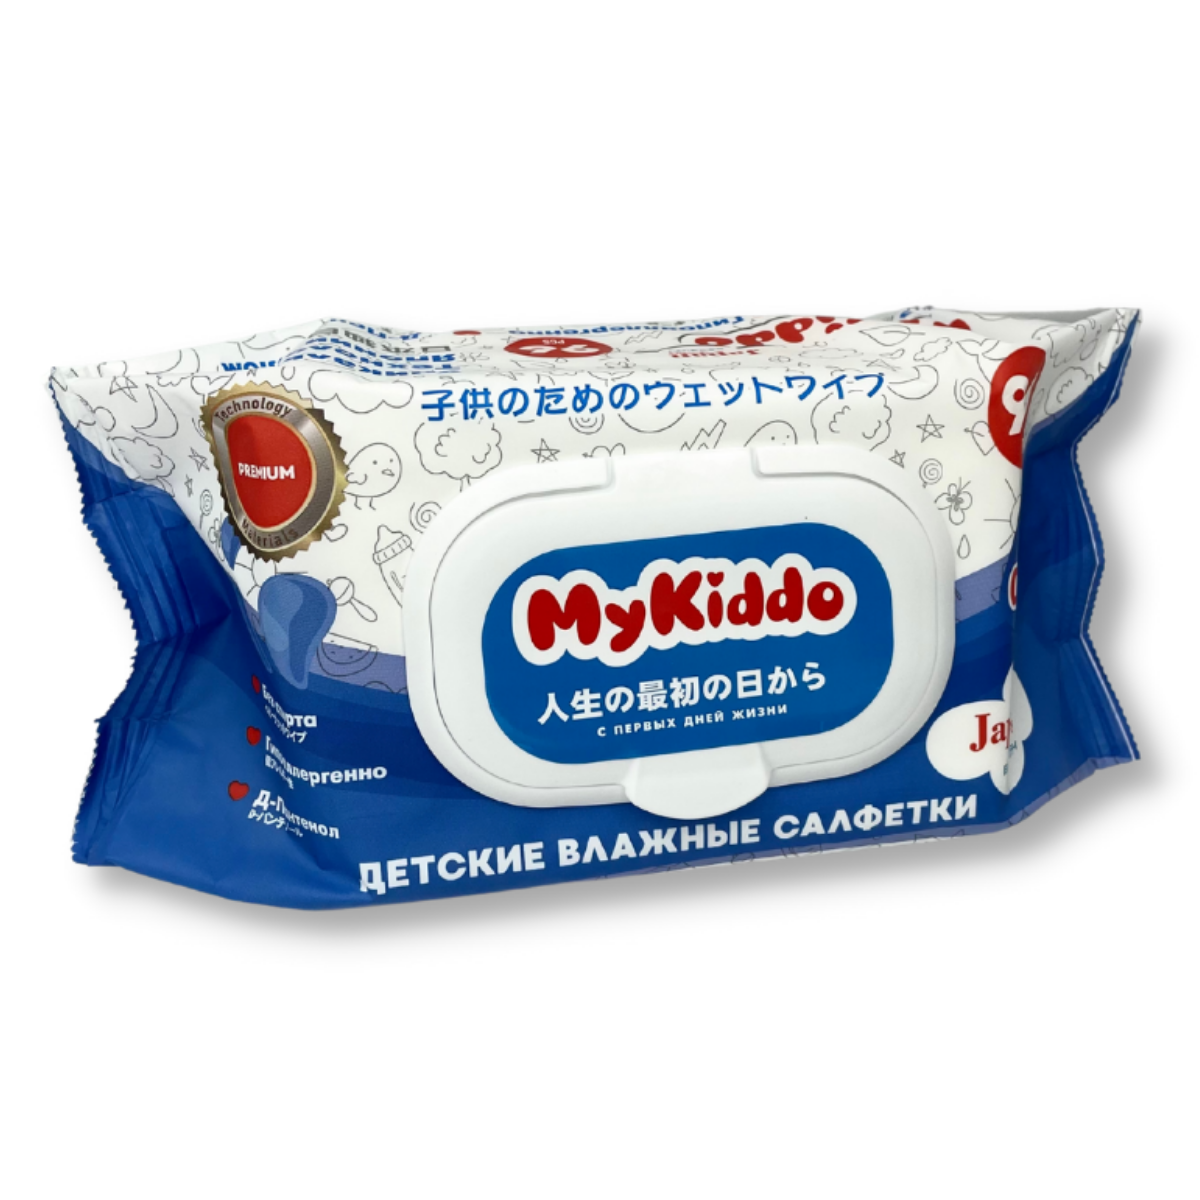 Детские влажные салфетки MyKiddo 1152 шт (12 упаковок по 96 шт) мега бокс